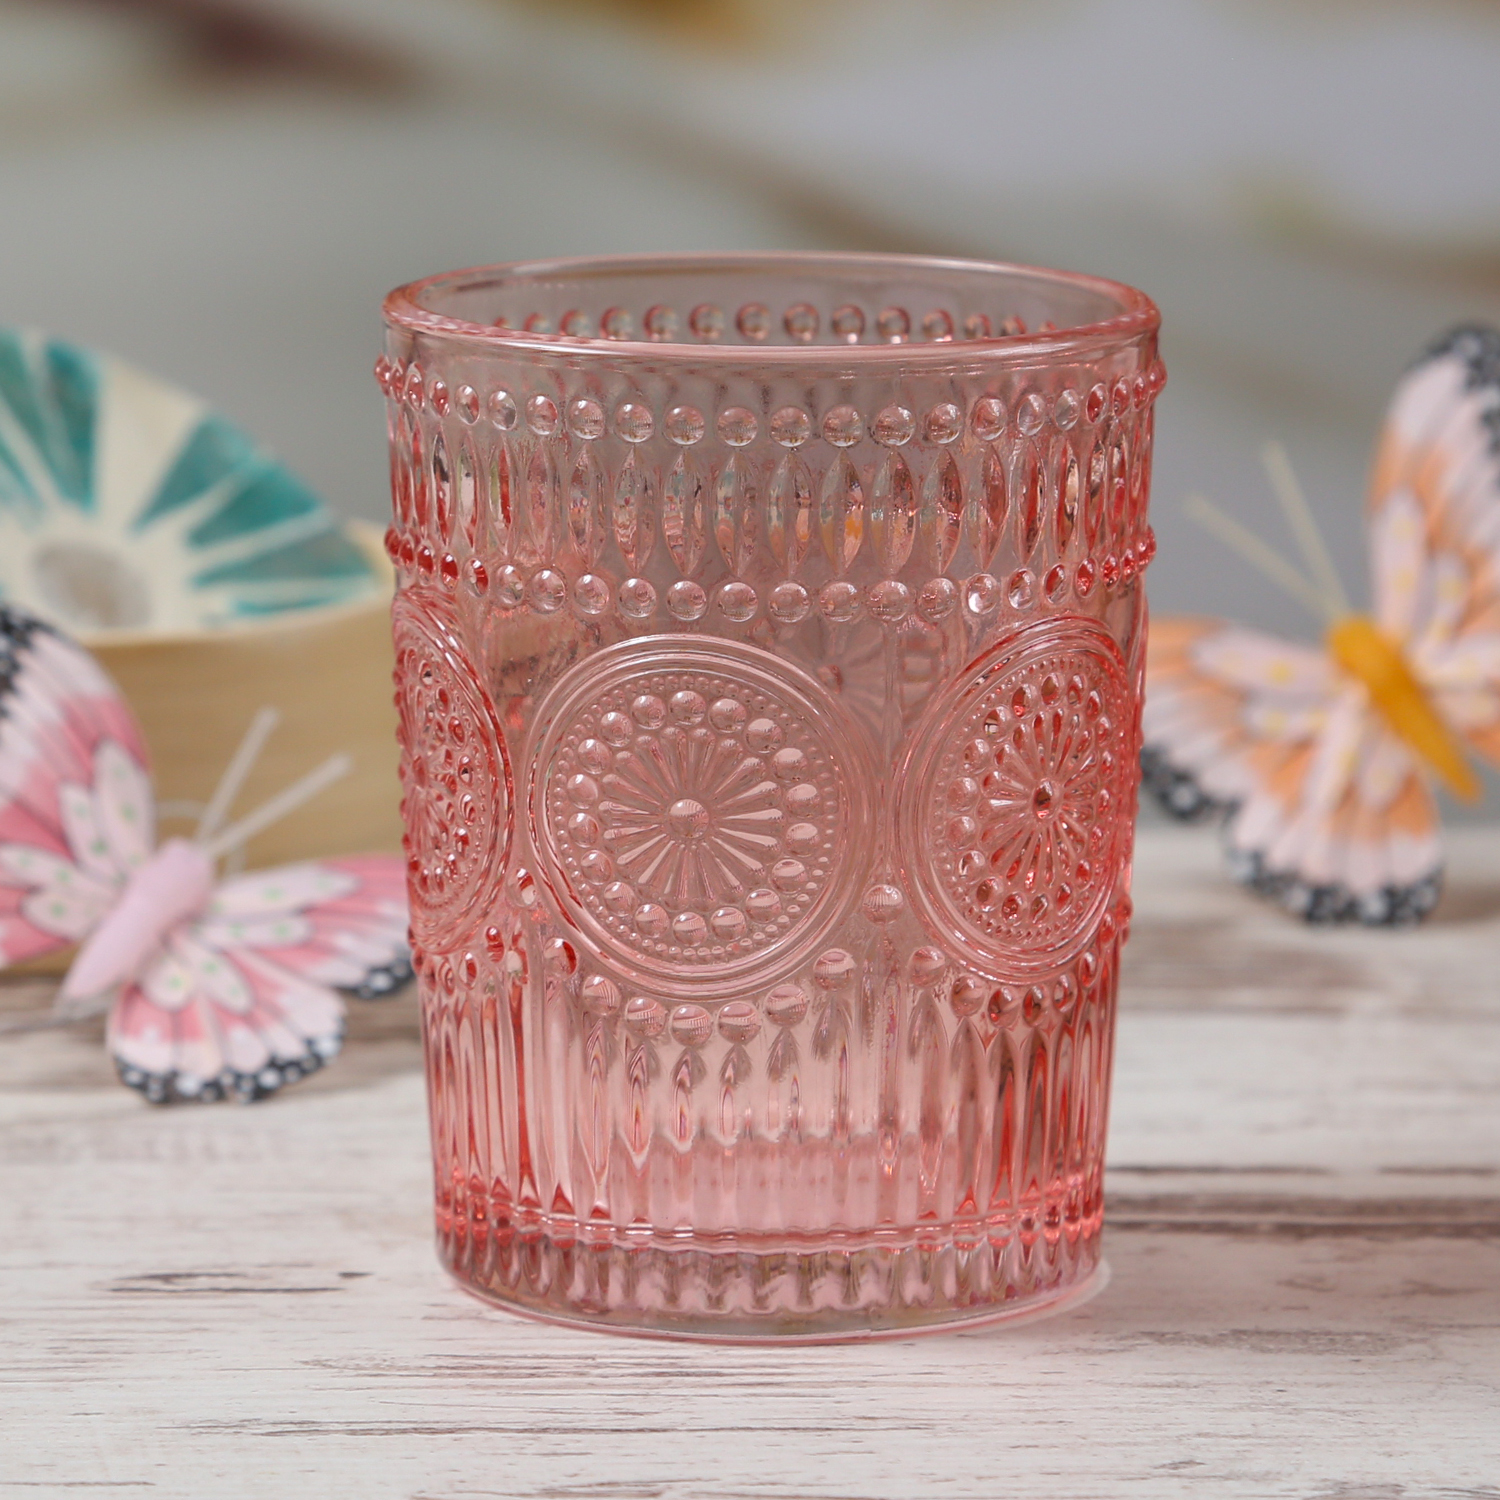 Trinkgläser Vintage - Glas - lebensmittelecht - 280ml - H: 10cm - mit Muster - rosa - 4er Set